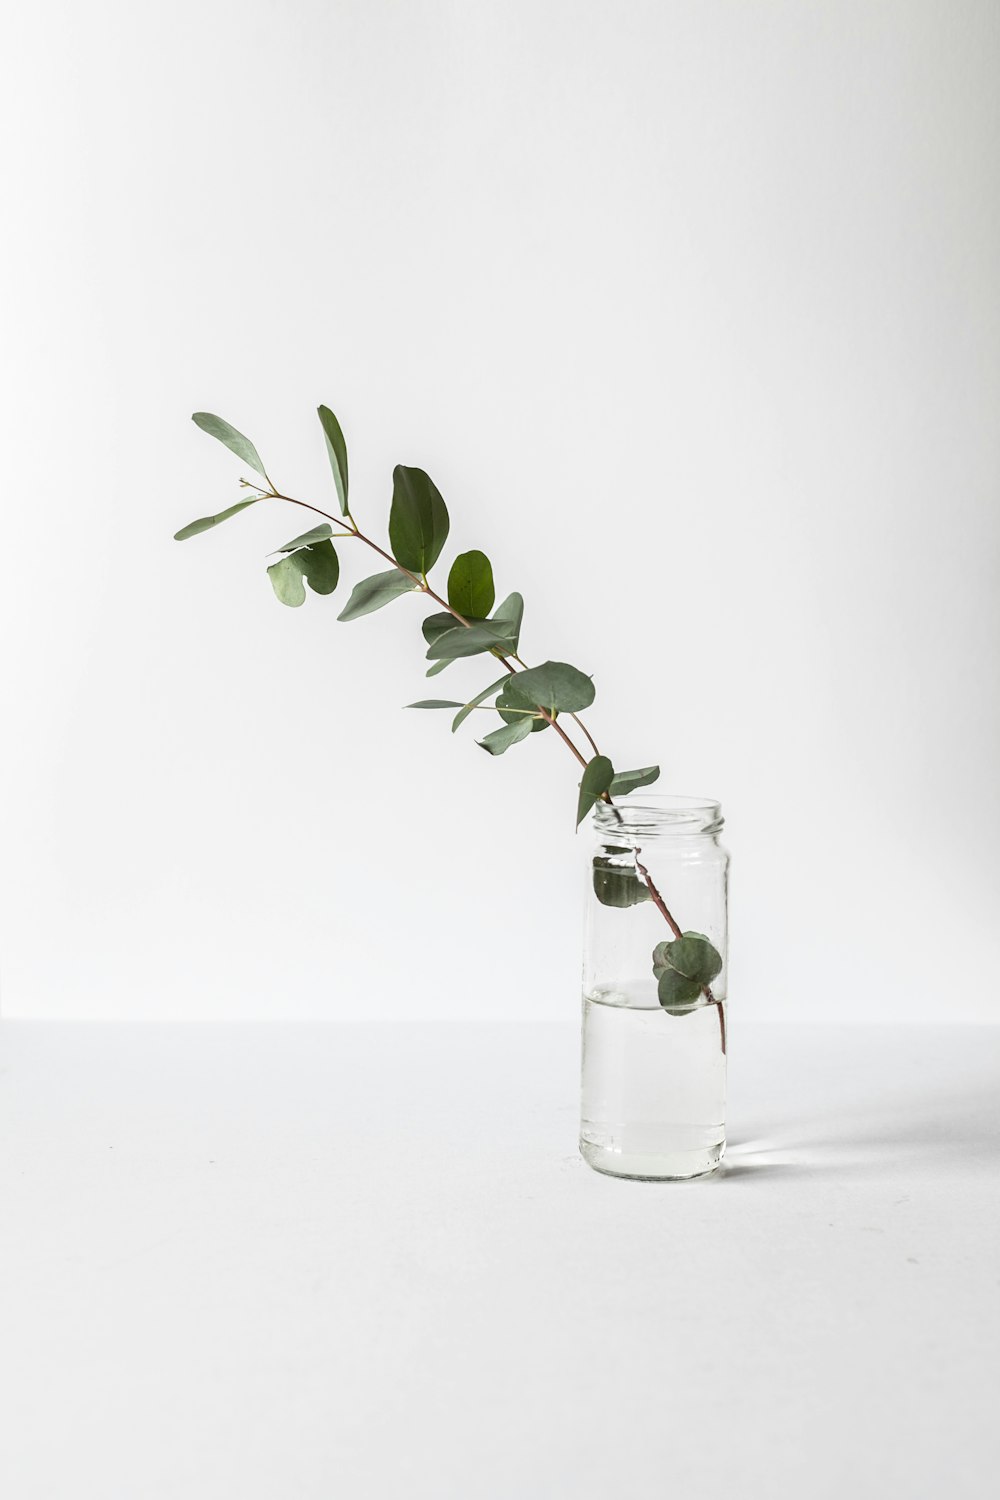 grünblättrige Pflanze im Glas